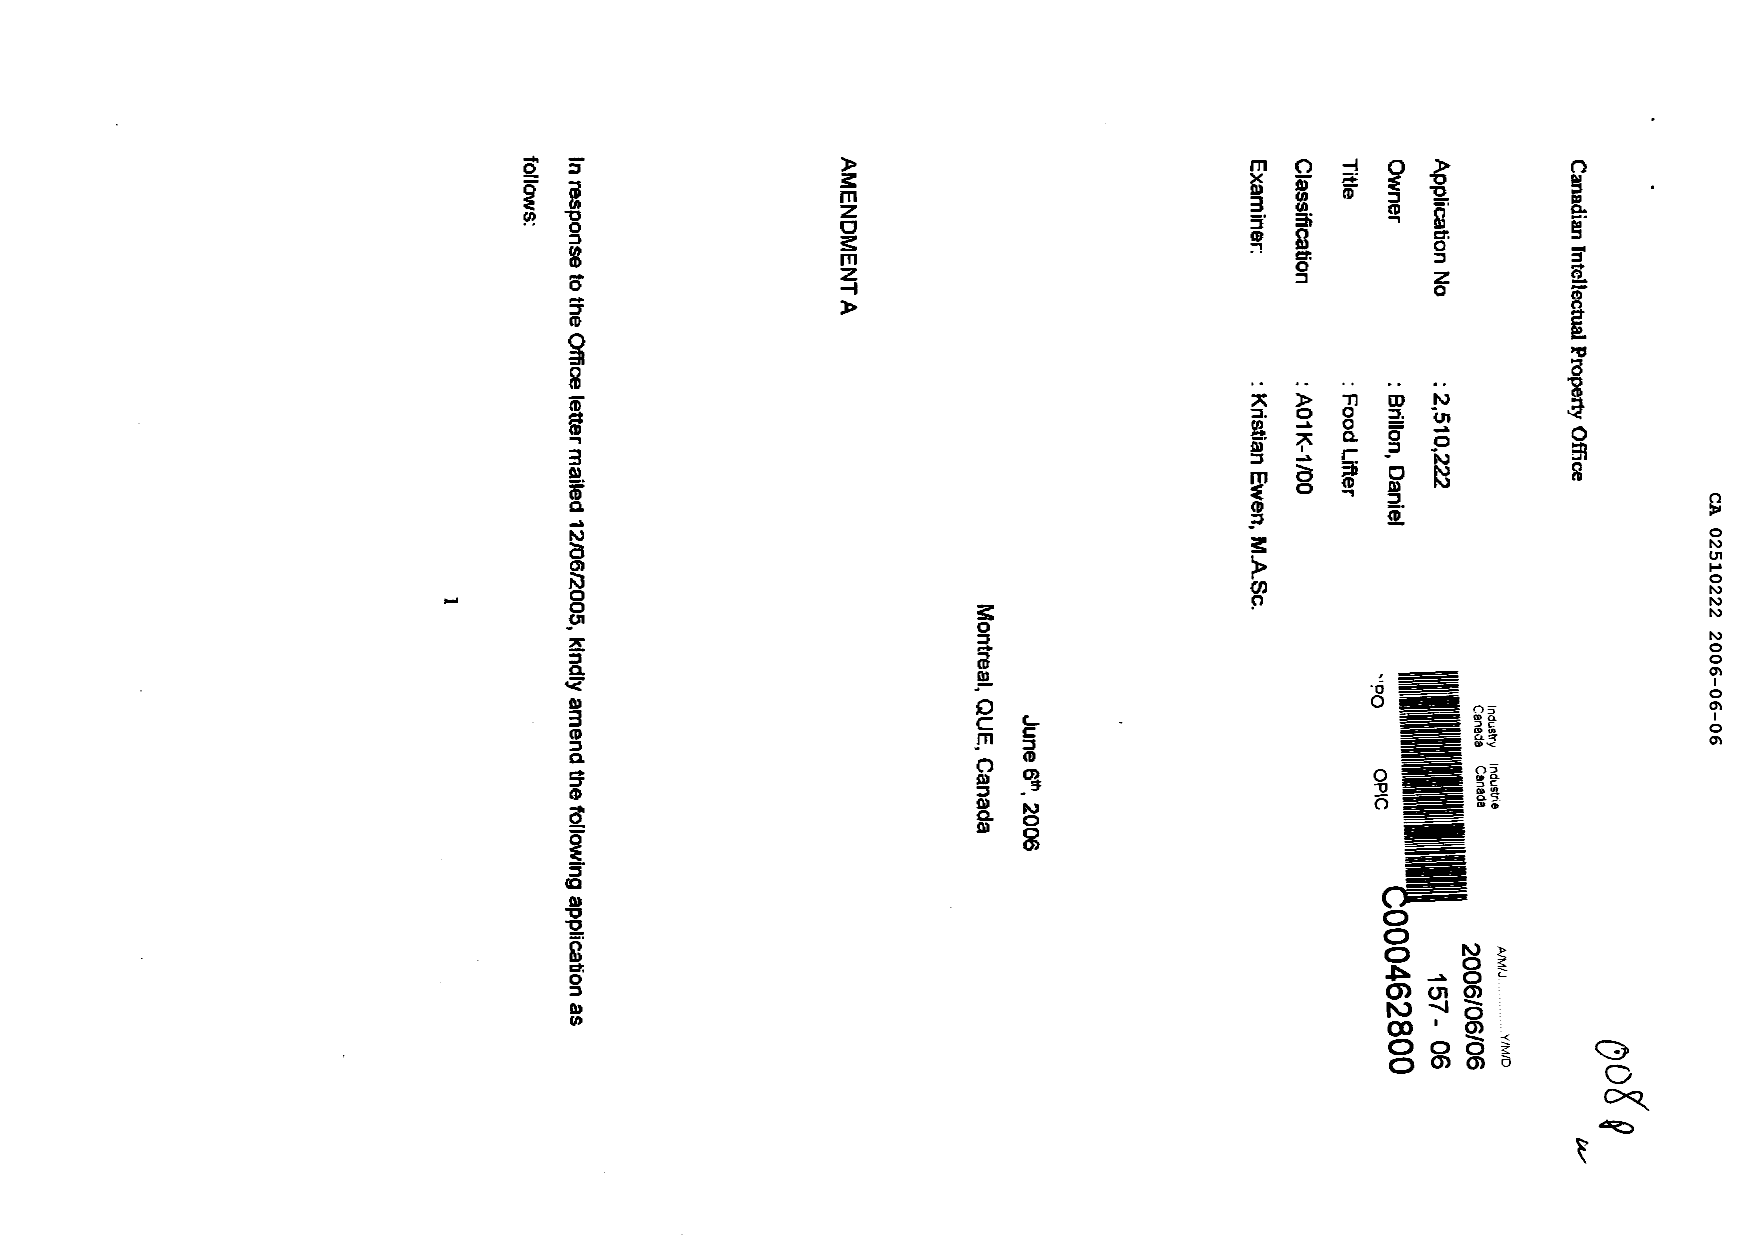 Document de brevet canadien 2510222. Poursuite-Amendment 20051206. Image 1 de 15